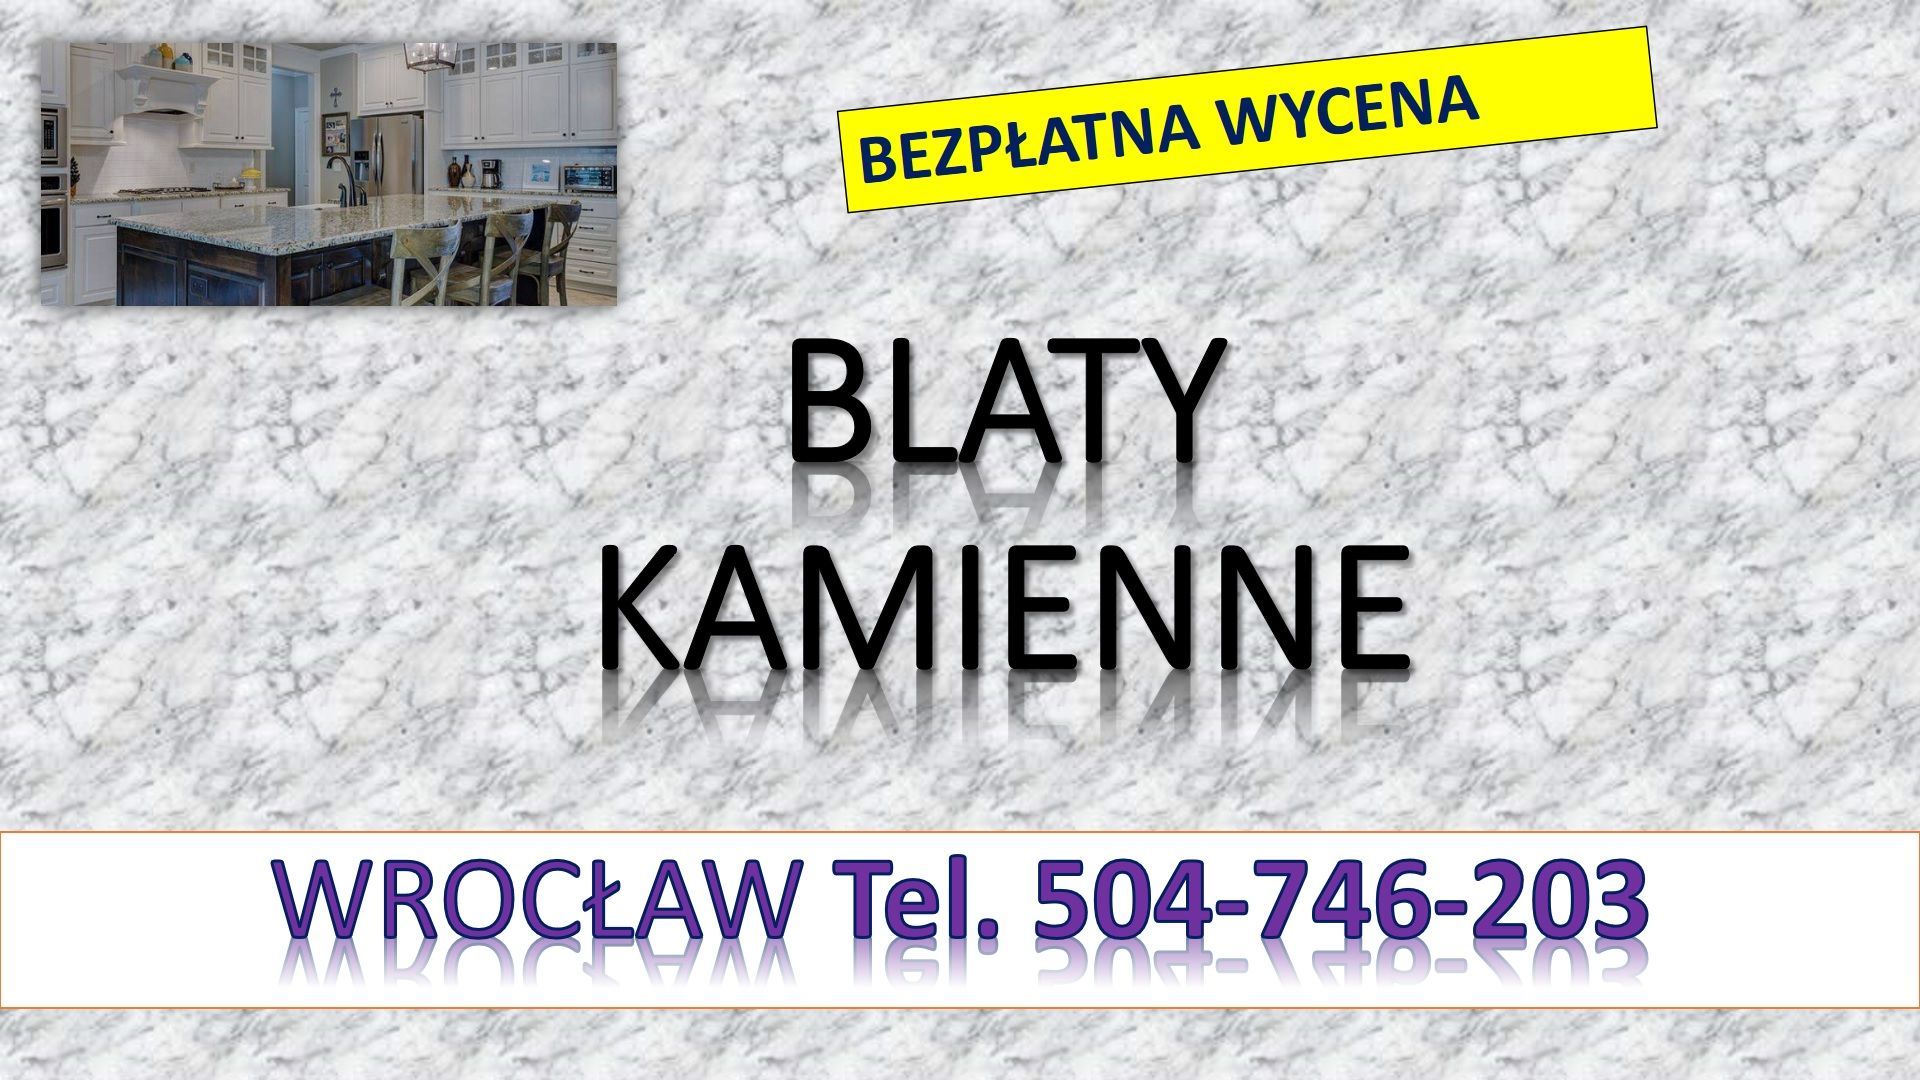 Blaty z kamienia, tel. 504-746-203, kuchenne, blat do kuchni. Wrocław, cena Wrocław - Zdjęcie 1